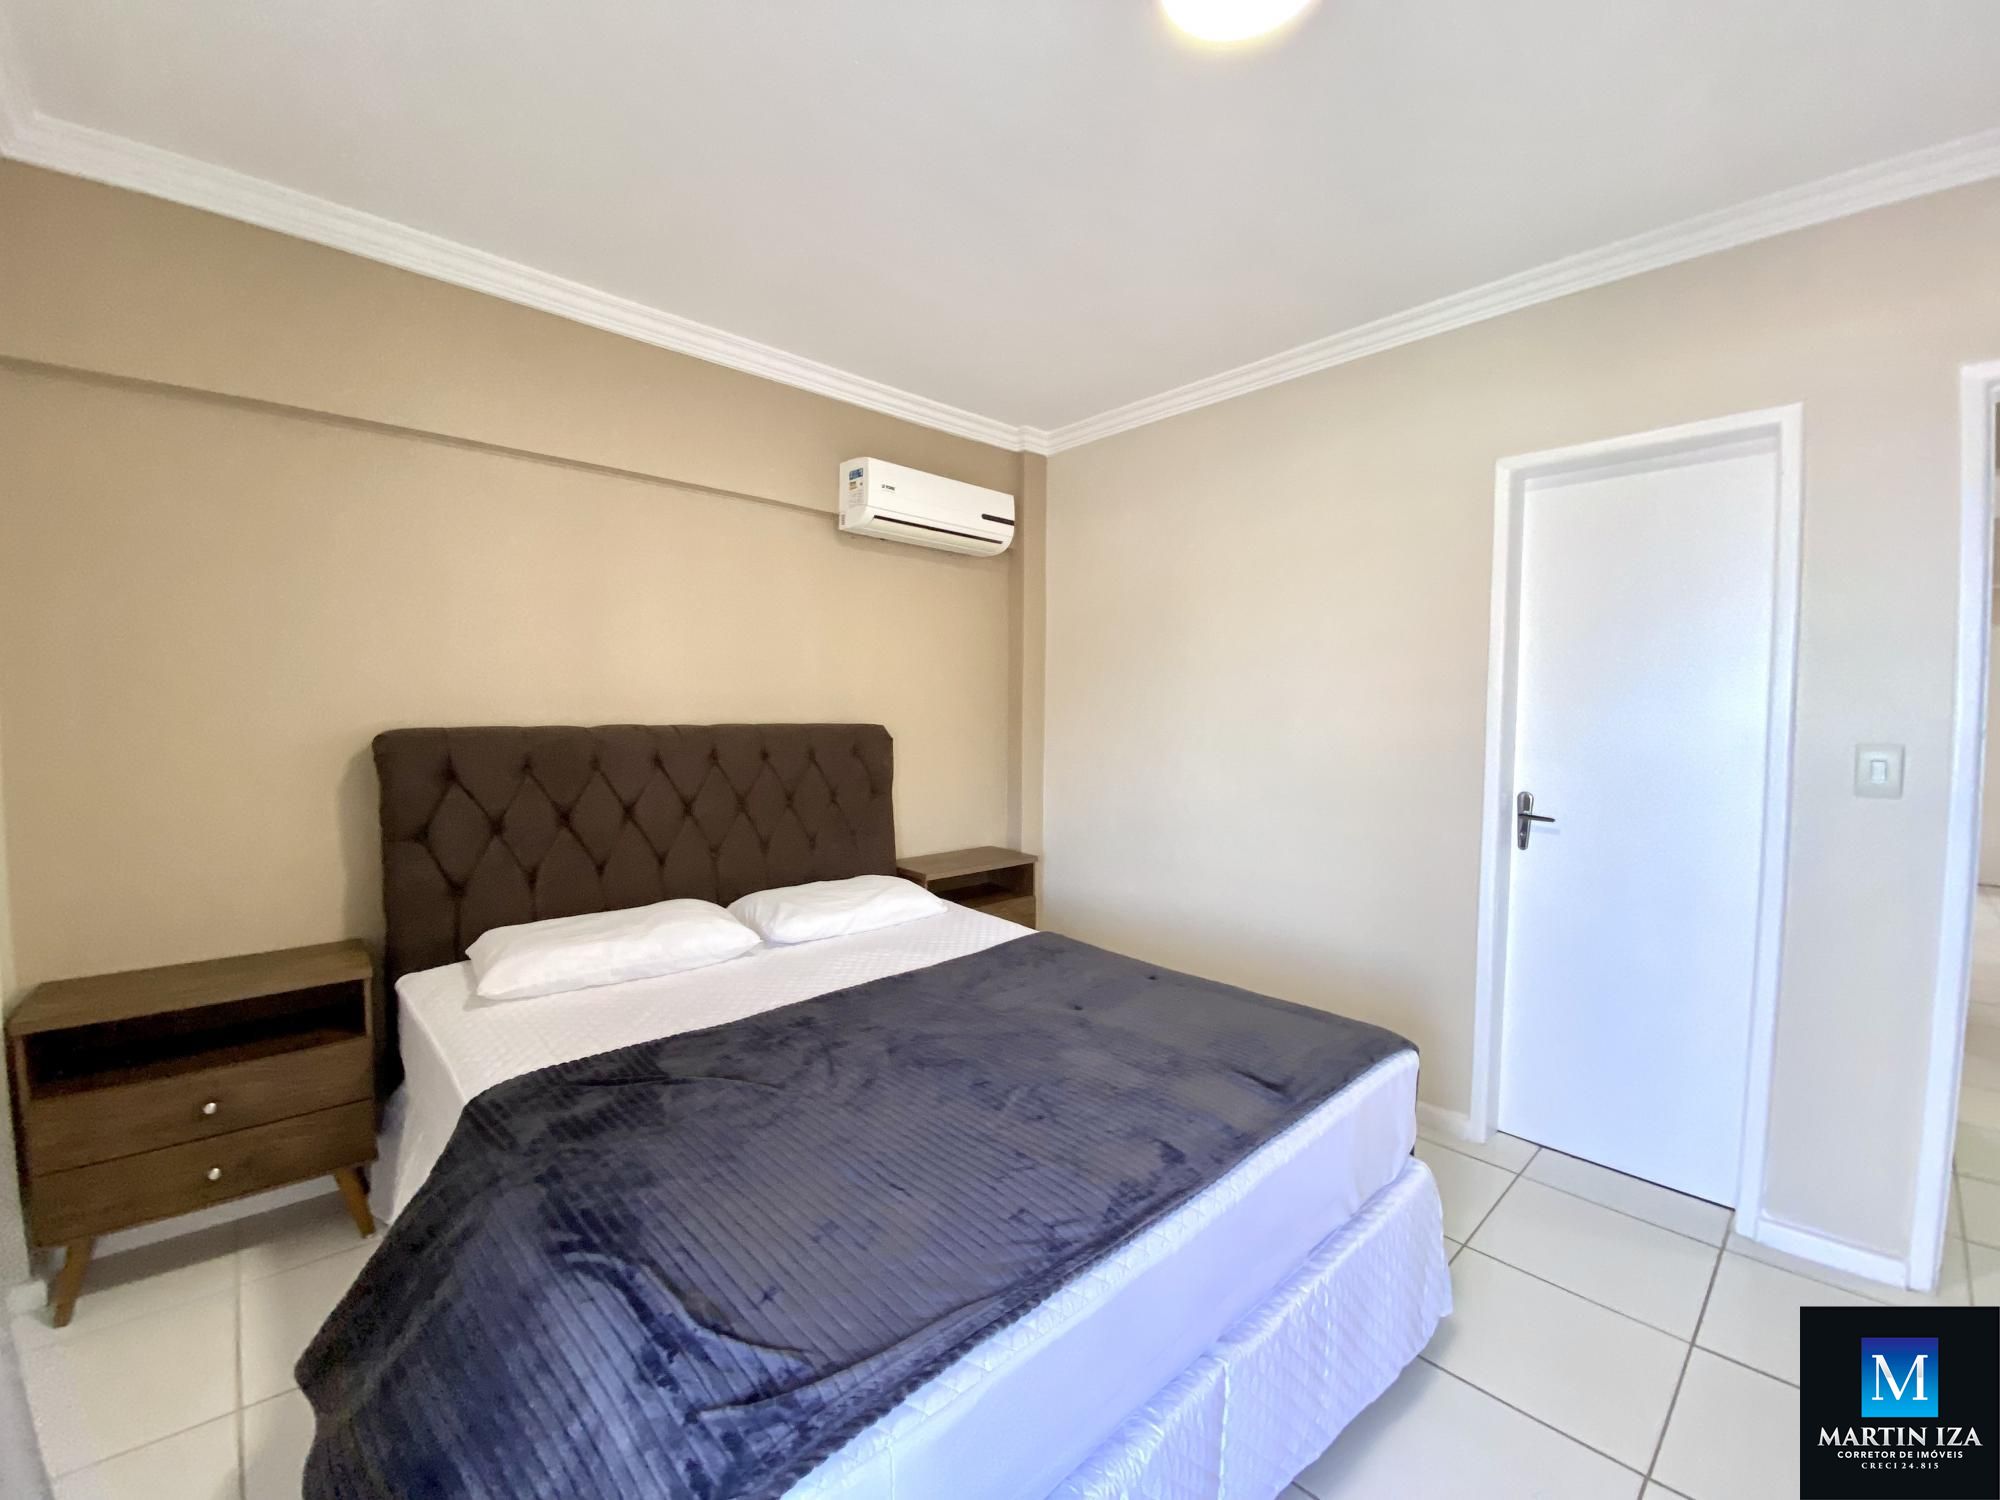 Apartamento com 3 Dormitórios para alugar, 110 m² por R$ 350,00